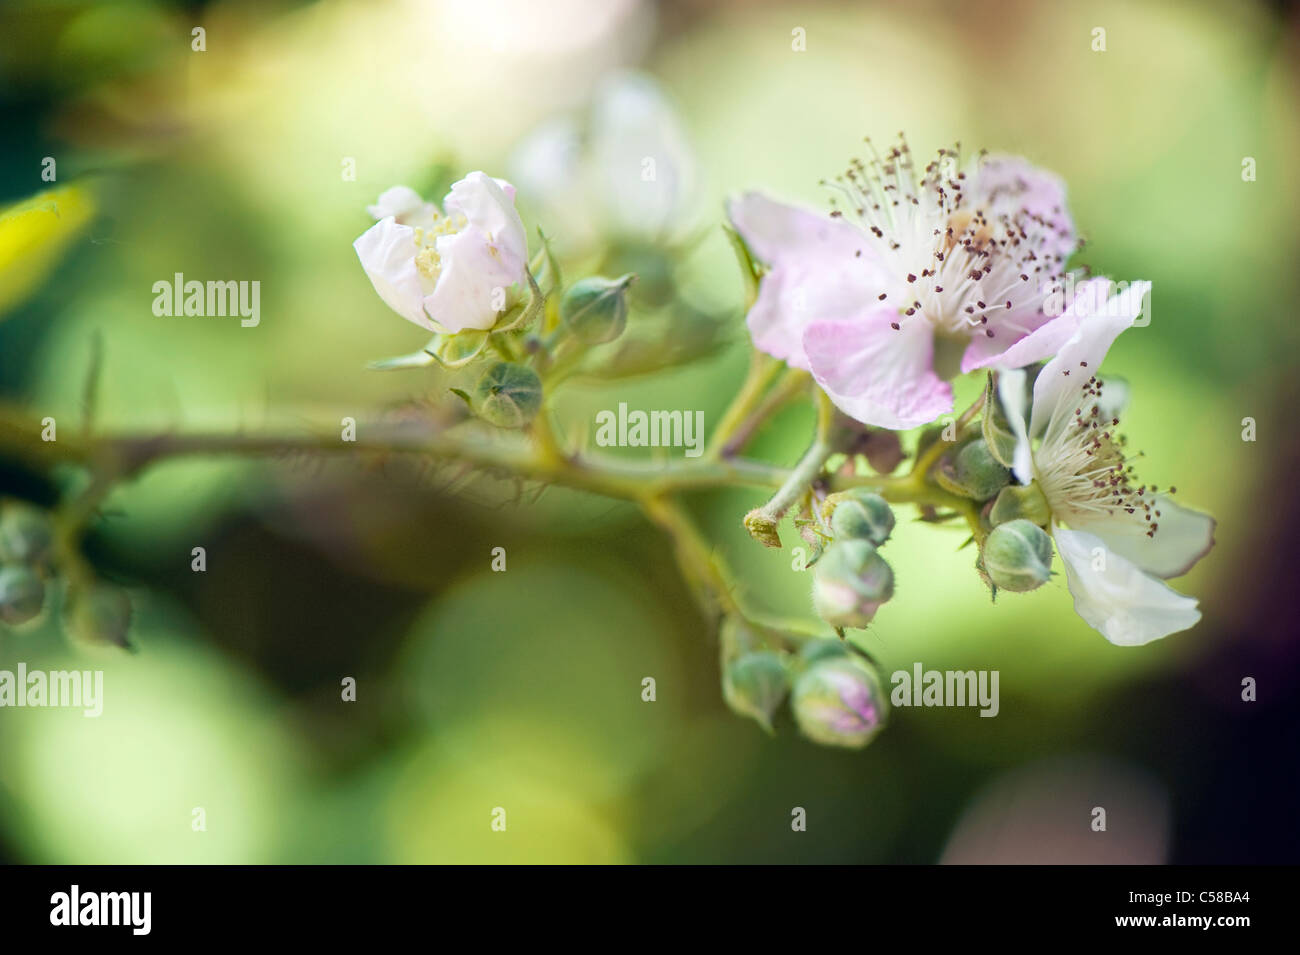 Close-up immagine della fioritura estiva rovo o Blackberry fiori che può essere morbido di colore rosa o bianco, prese nei confronti di un dolce sottofondo. Foto Stock